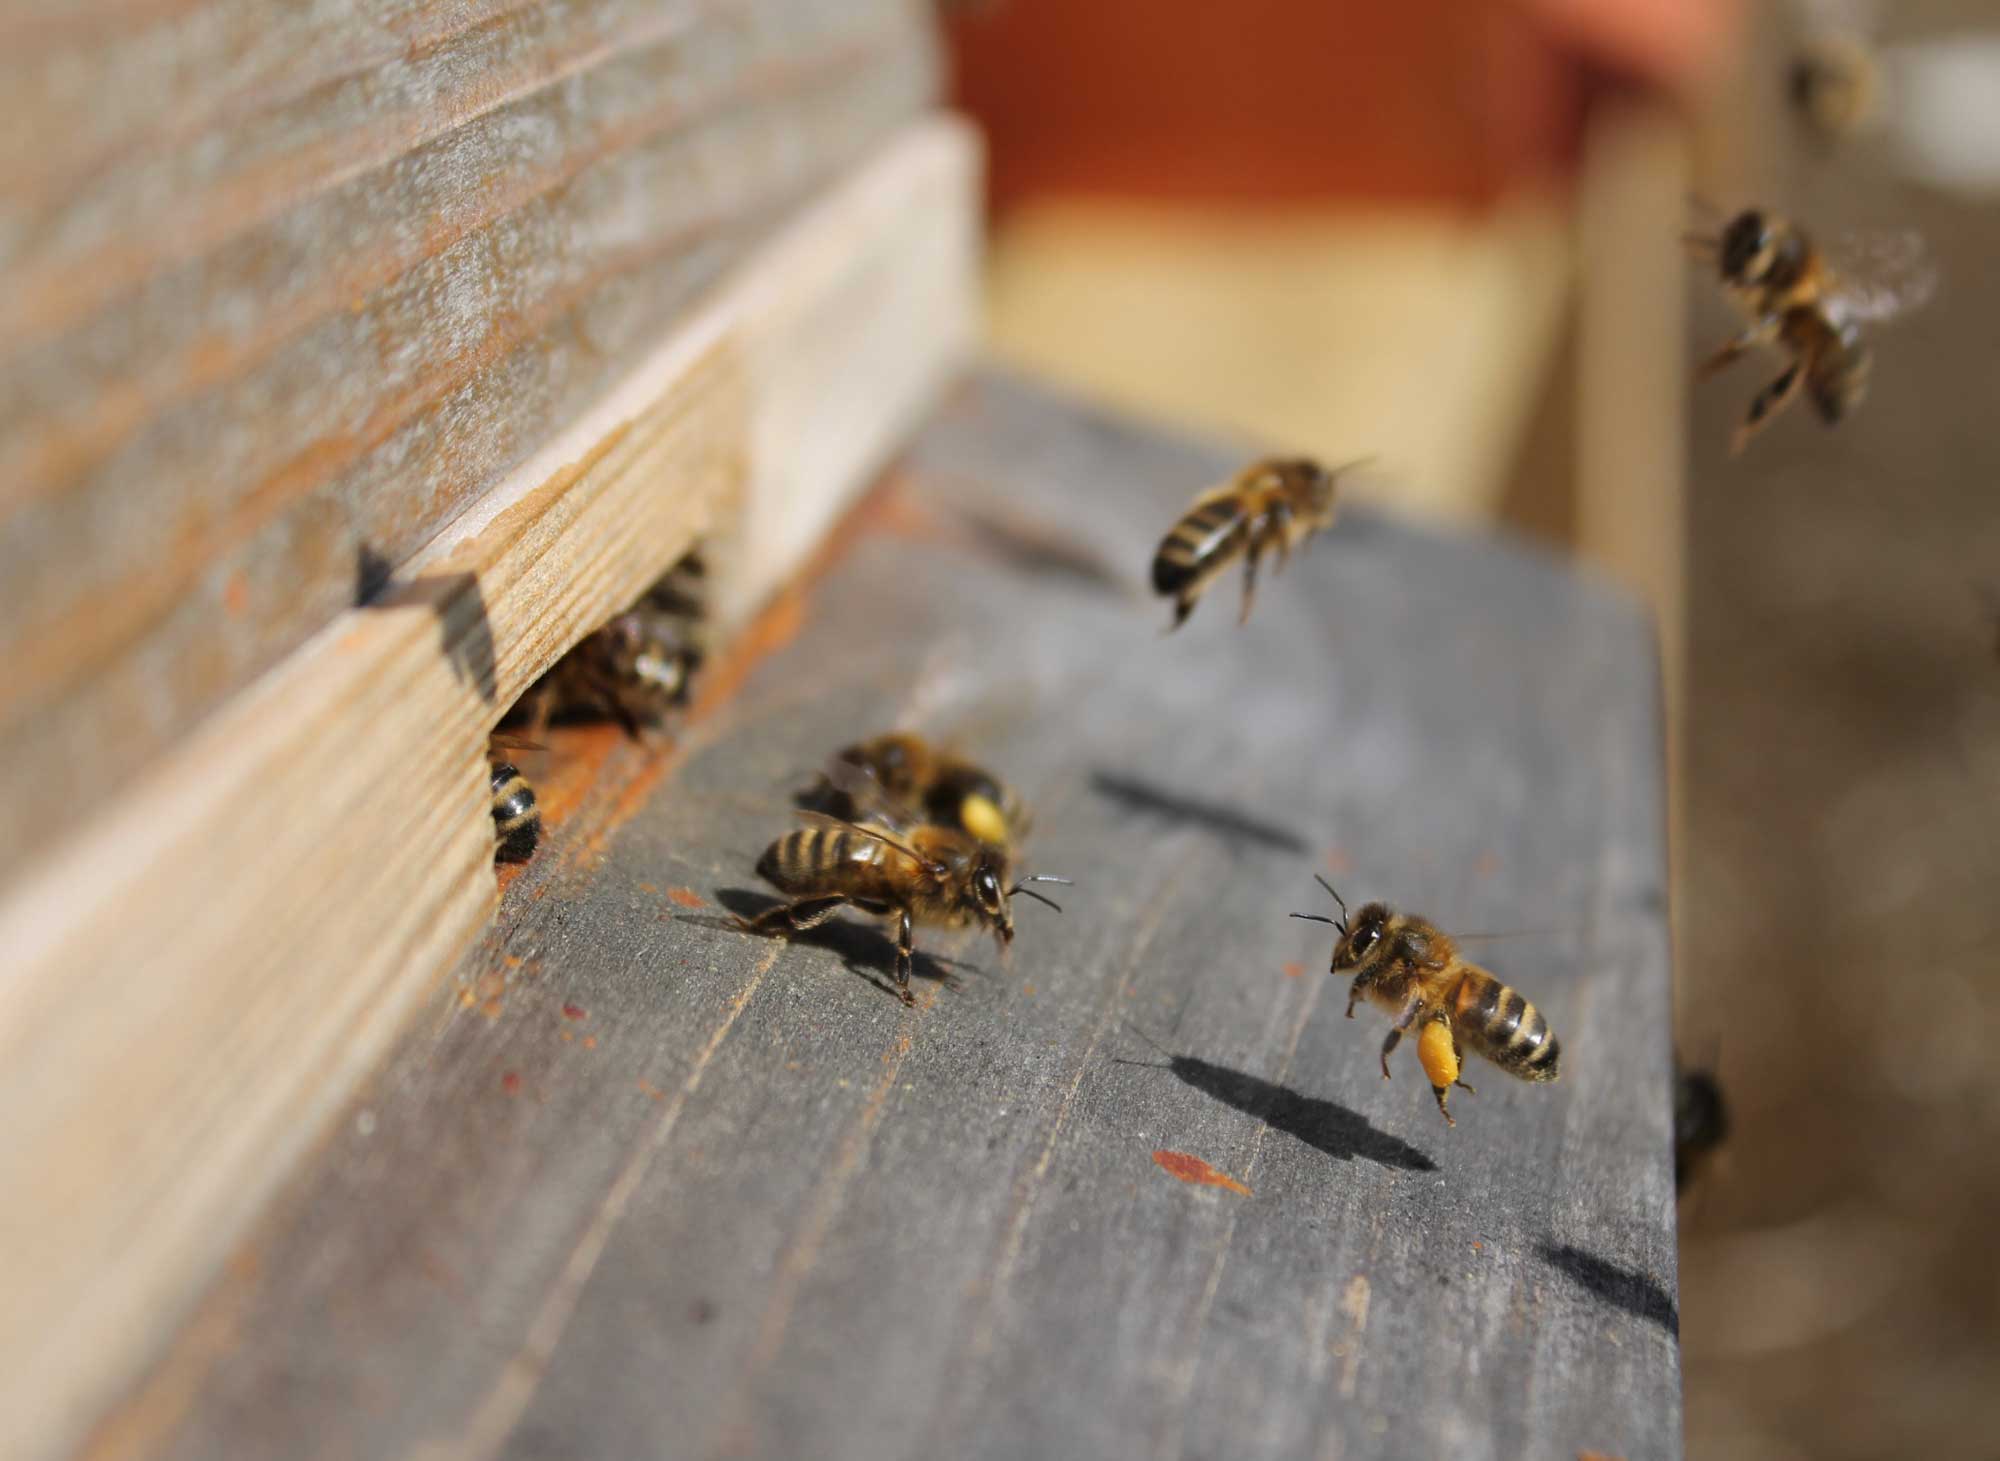 Rosemount bees